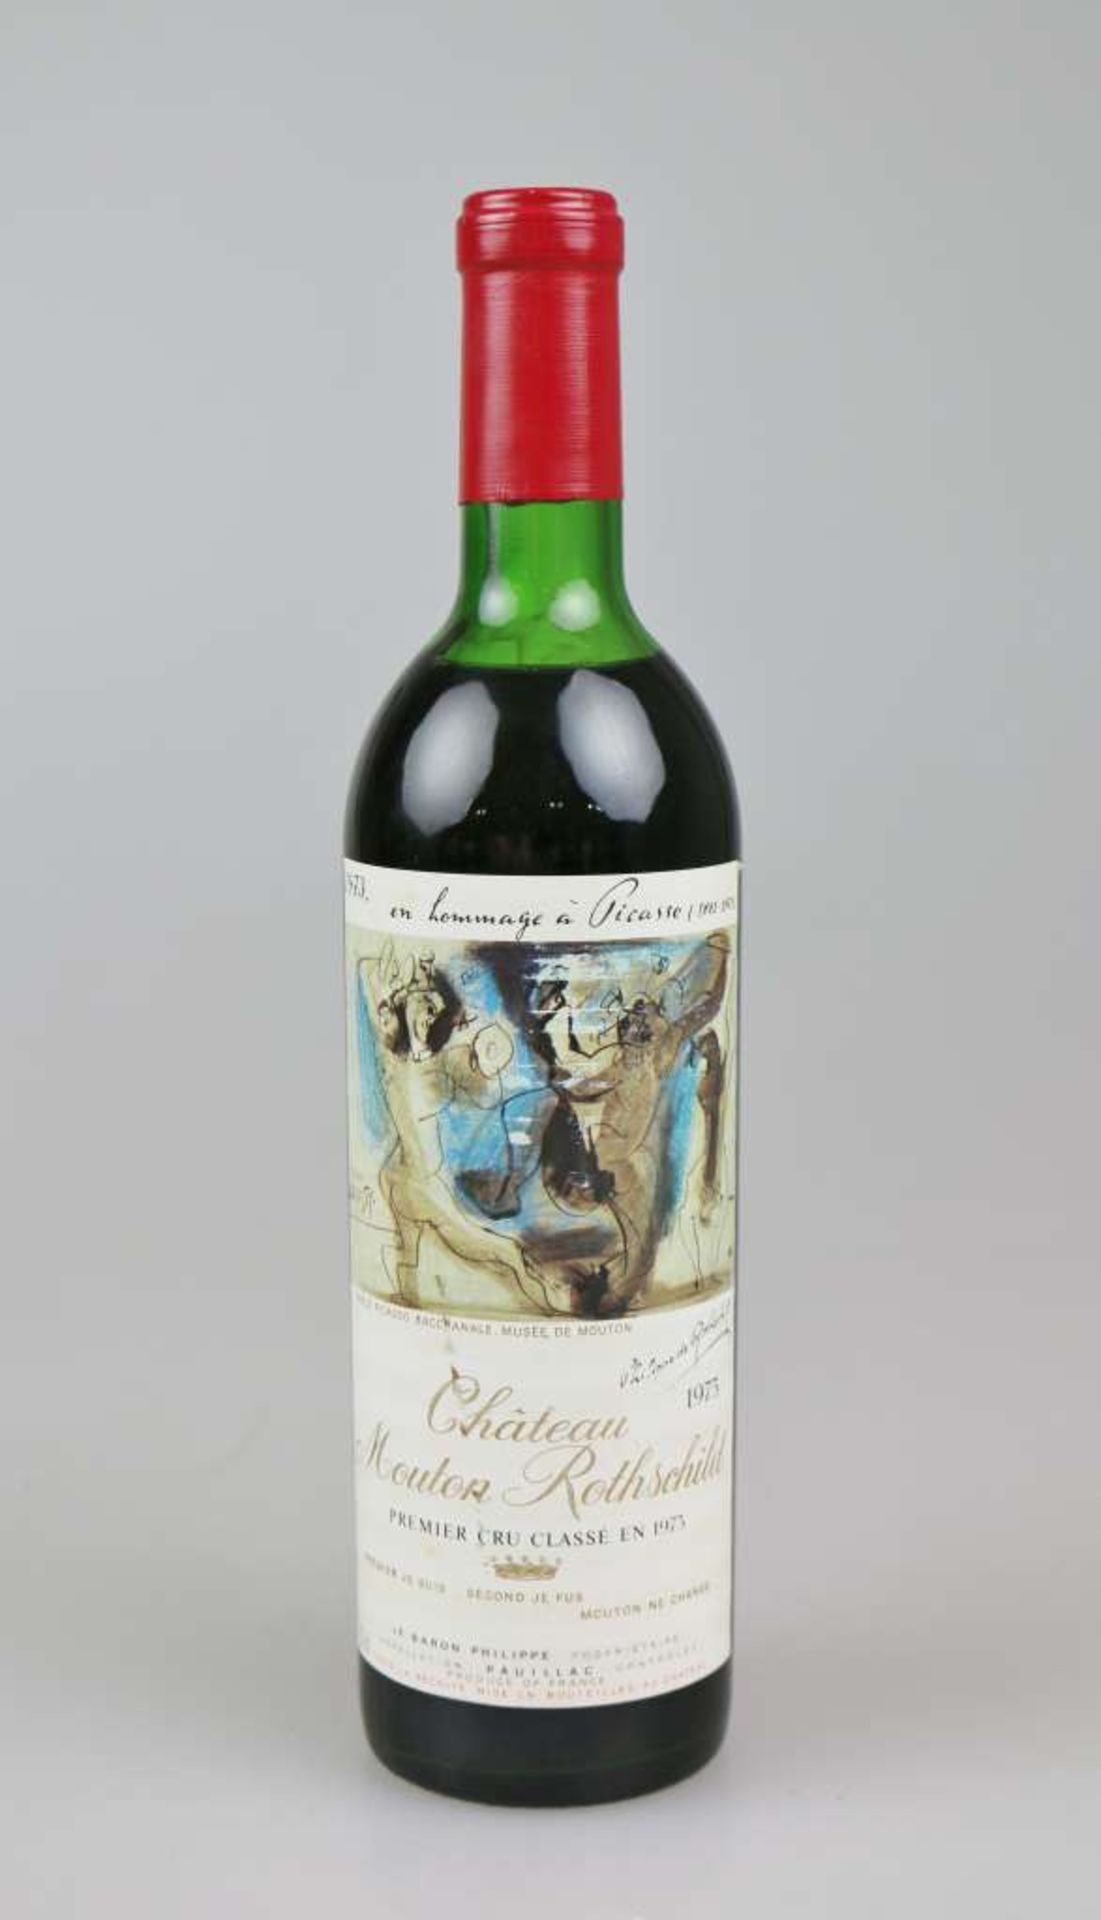 Rotwein, Flasche Chateau Mouton Rothschild, Pauillac (Premier Grand Cru Classé) 1973, en hommage à - Bild 3 aus 4